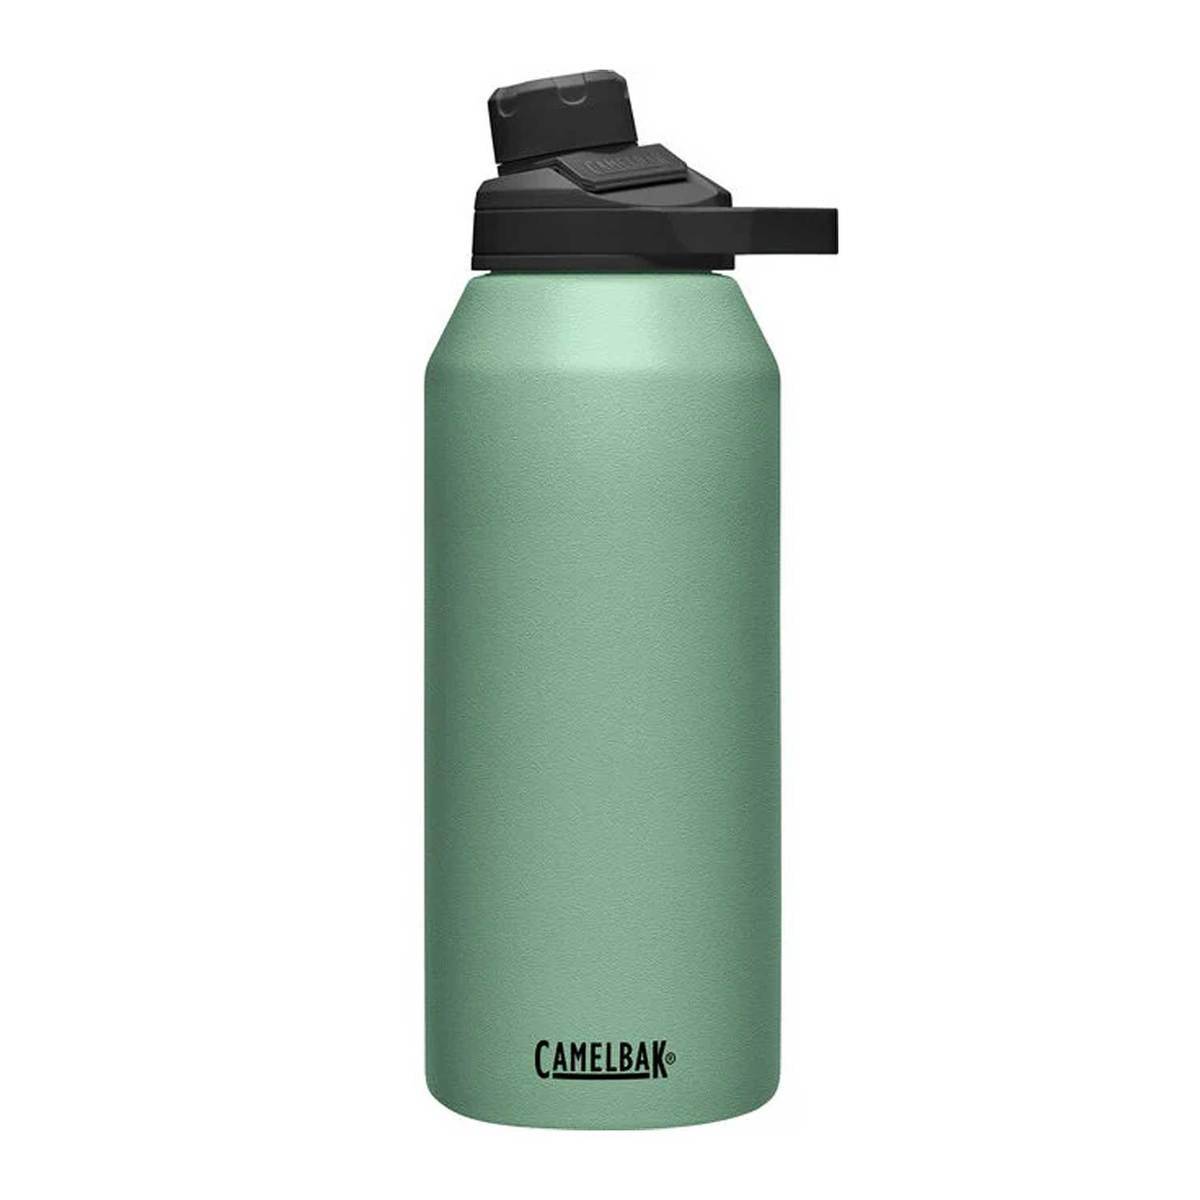 https://www.sportsmans.com/medias/camelbak-chute-mag-40oz-insulated-bottle-universal-cap-moss-1695088-1.jpg?context=bWFzdGVyfGltYWdlc3w0NTQ2OHxpbWFnZS9qcGVnfGltYWdlcy9oZDEvaDVhLzk4Mzk2OTA3NzY2MDYuanBnfDllY2ZlNTVmODlmNDNiZDJhMGM0MzUxZDc1MGJiOWNhODkxZTE1NDhlNjRiOWRiZDdlNzE4MzlkMzI5ODEzYzc